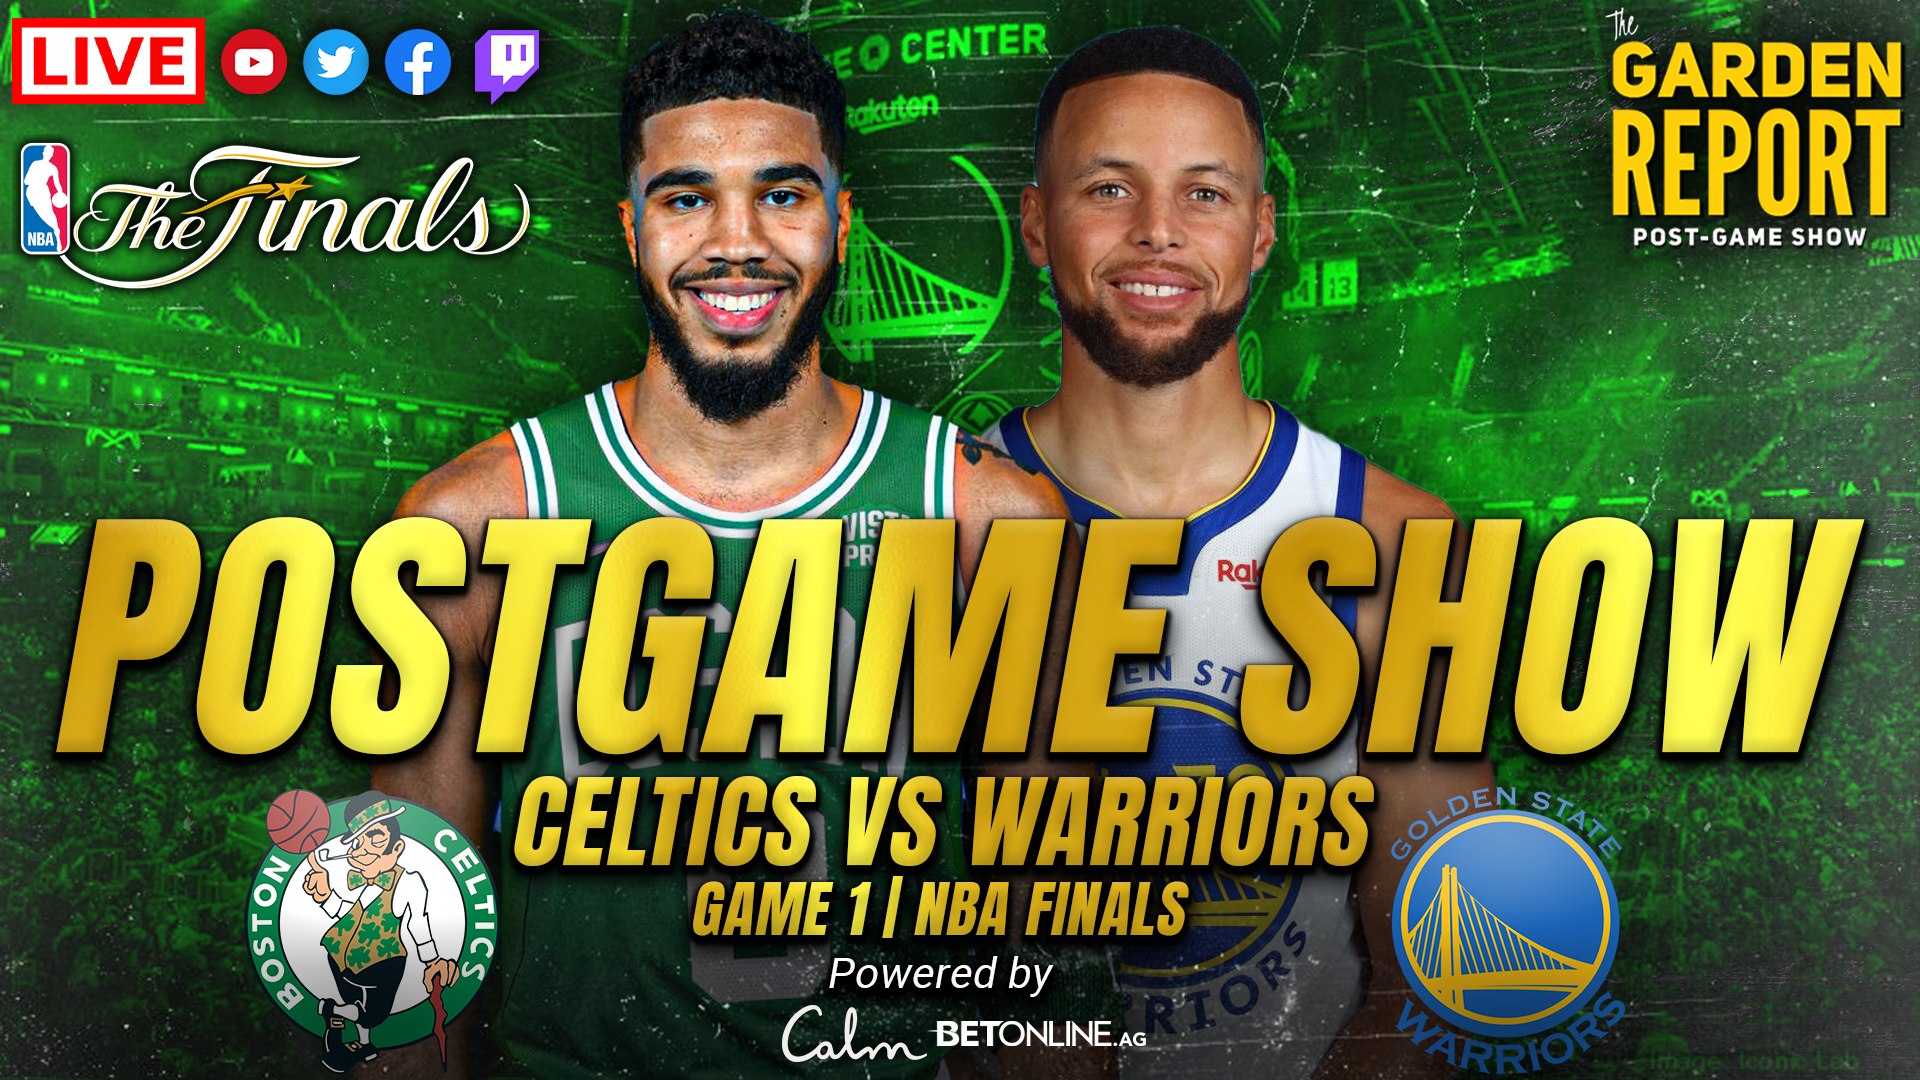 Celtics vs Warriors Game 1 NBA Finals Postgame Show